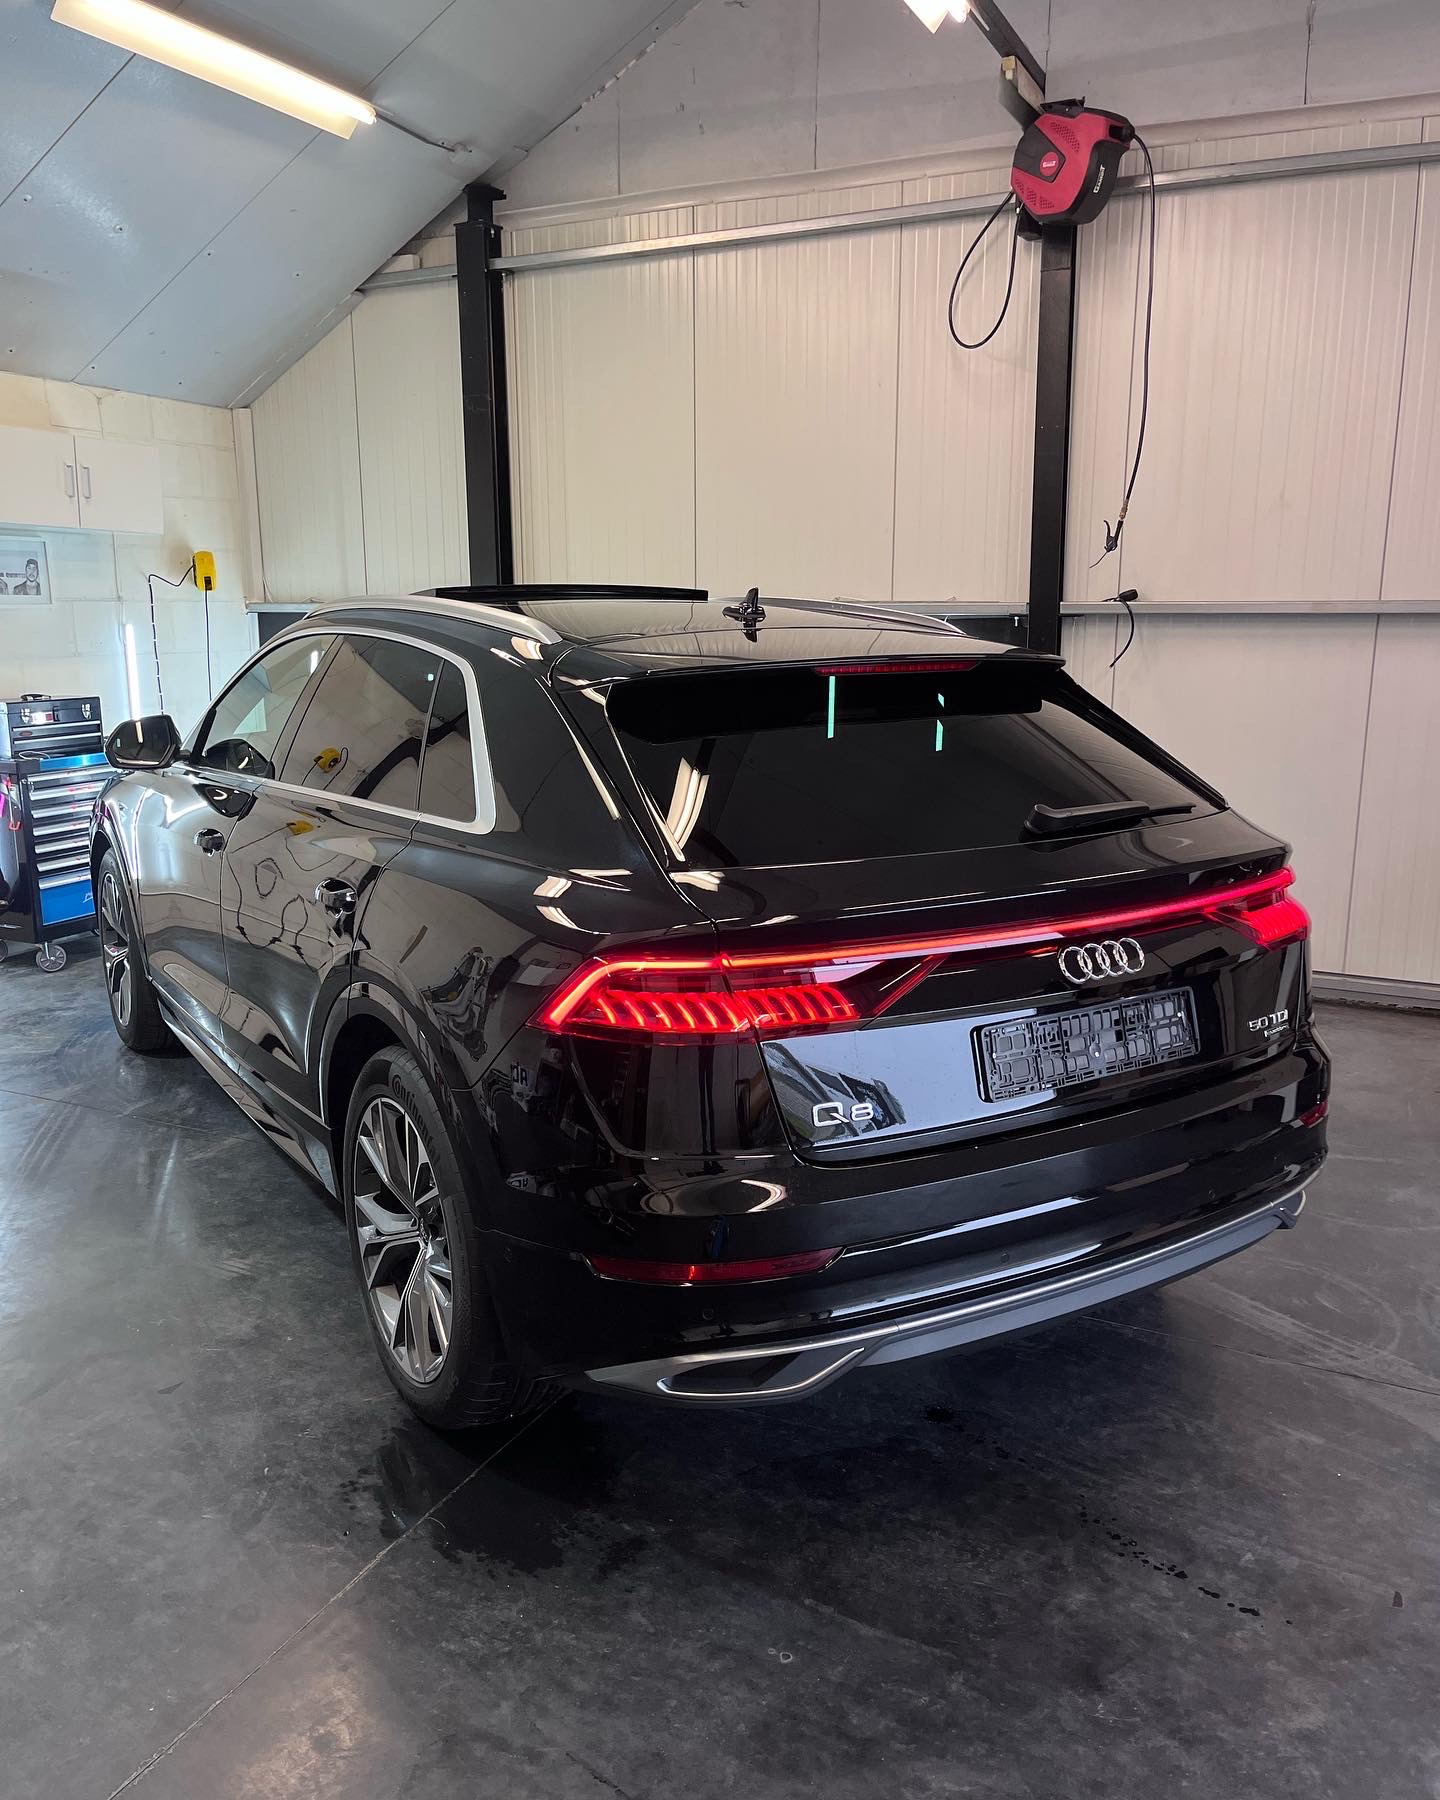 Audi Q8 geparkeerd in de garage waarvan de achterruit getint is